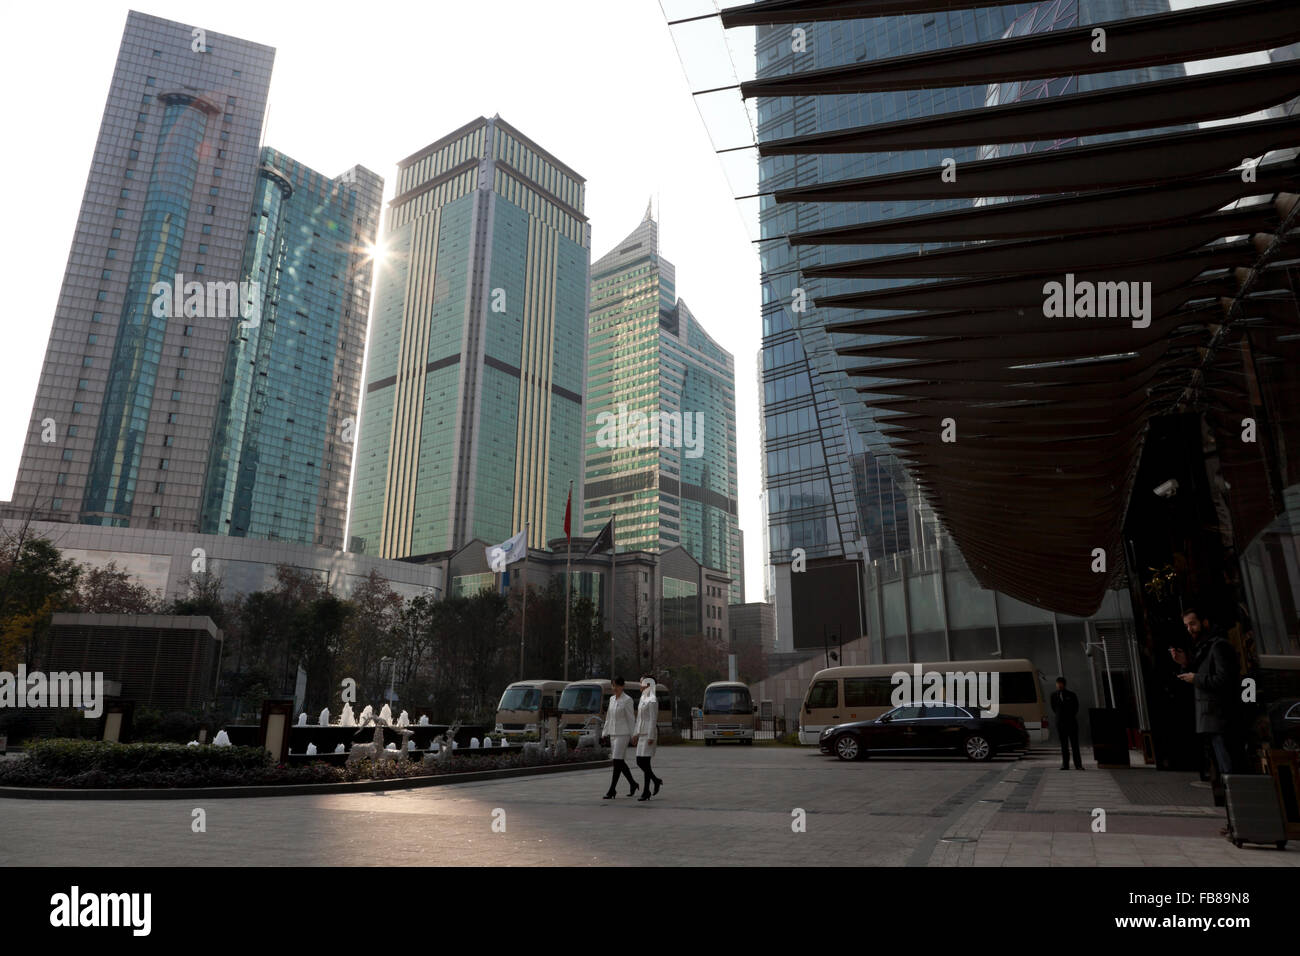 Grattacieli holding eleganti alberghi e uffici dominano il centro di Chengdu nella provincia di Sichuan in Cina. Foto Stock